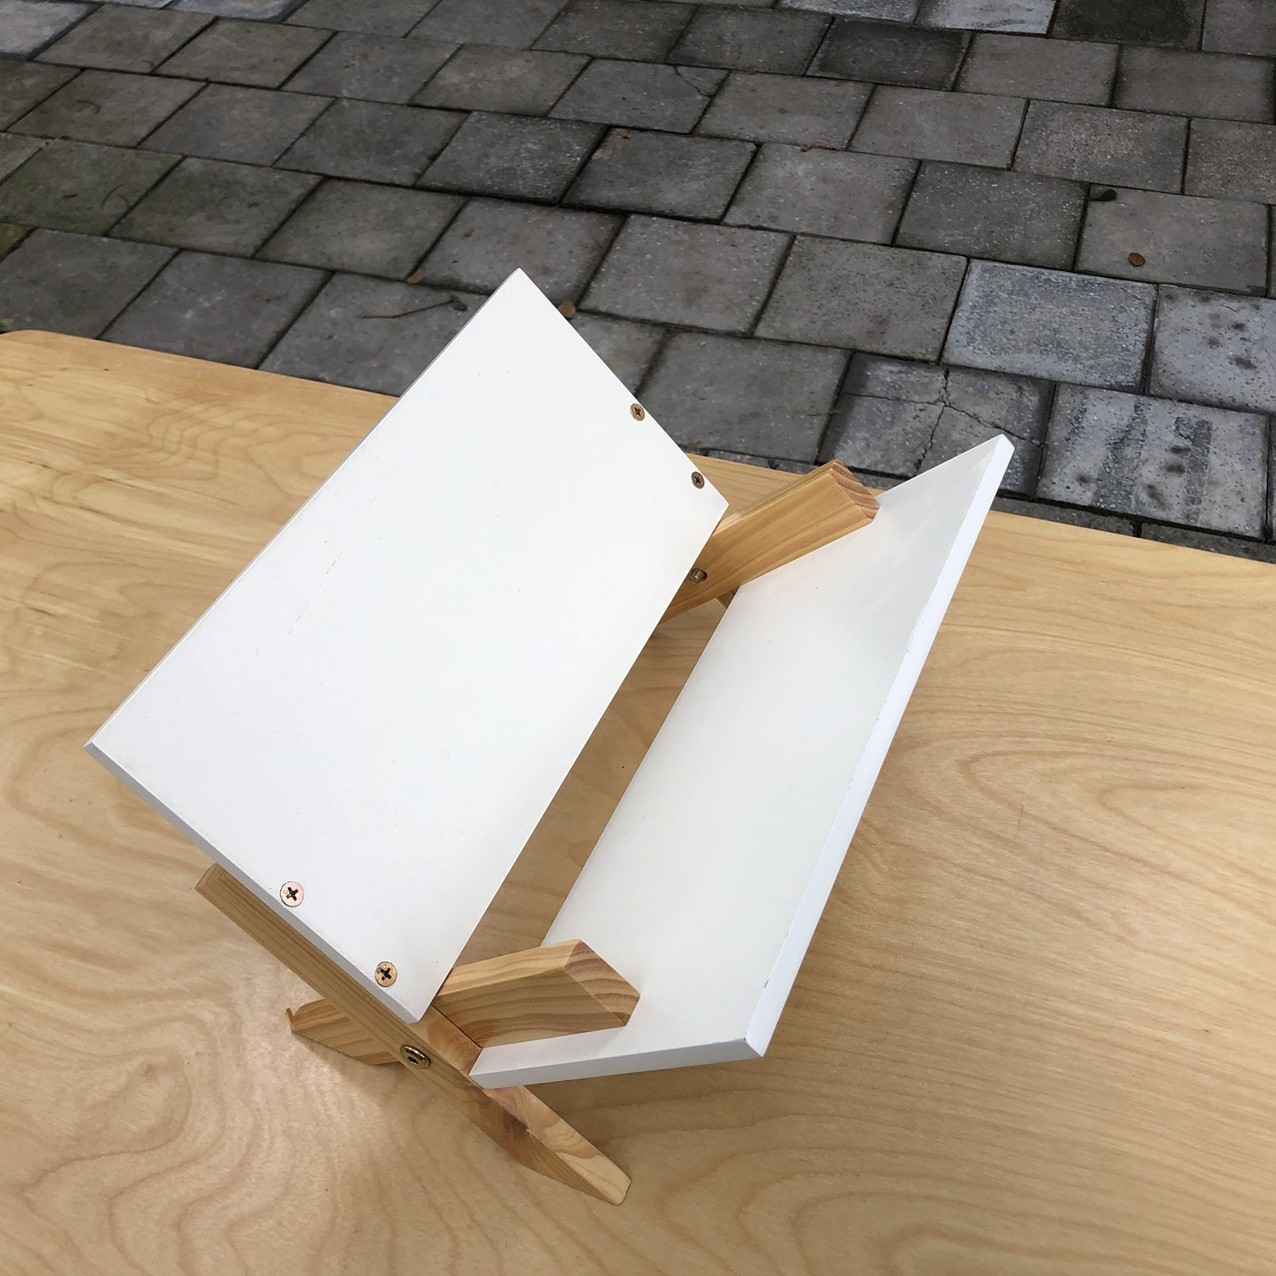 Kệ Giá sách gỗ tự nhiên để bàn loại chân chéo,thiết kế tháo lắp thông minh của KNF Furniture